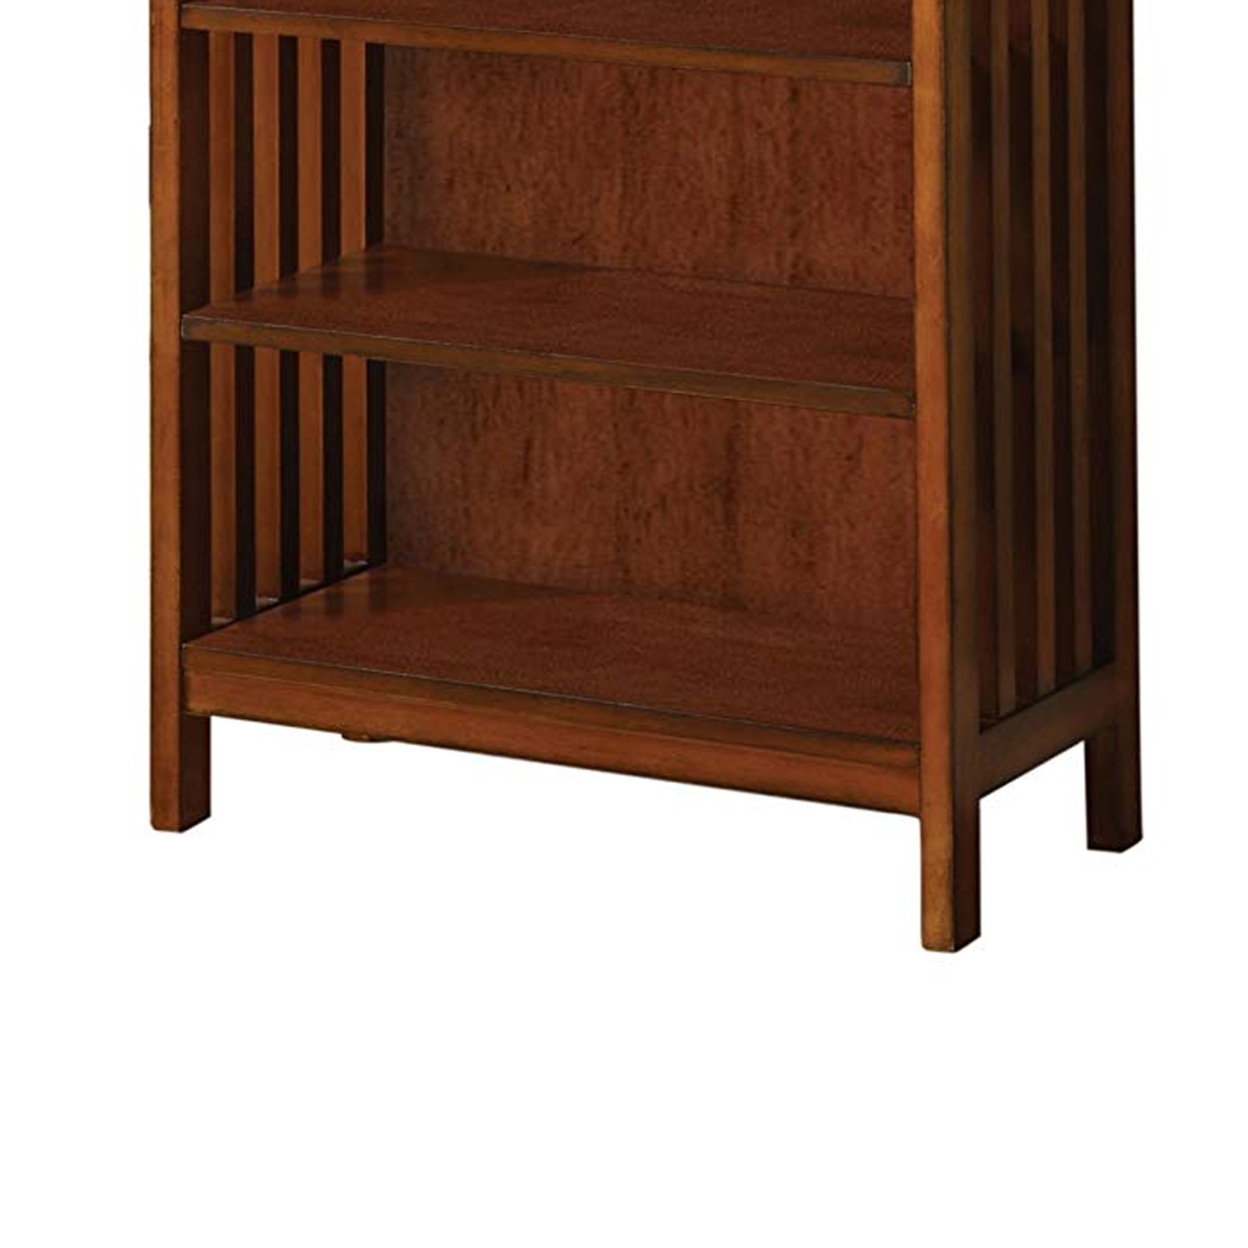 5 Tier Wooden Media Shelf With Slatted Side Panels, Oak Brown- Saltoro Sherpi